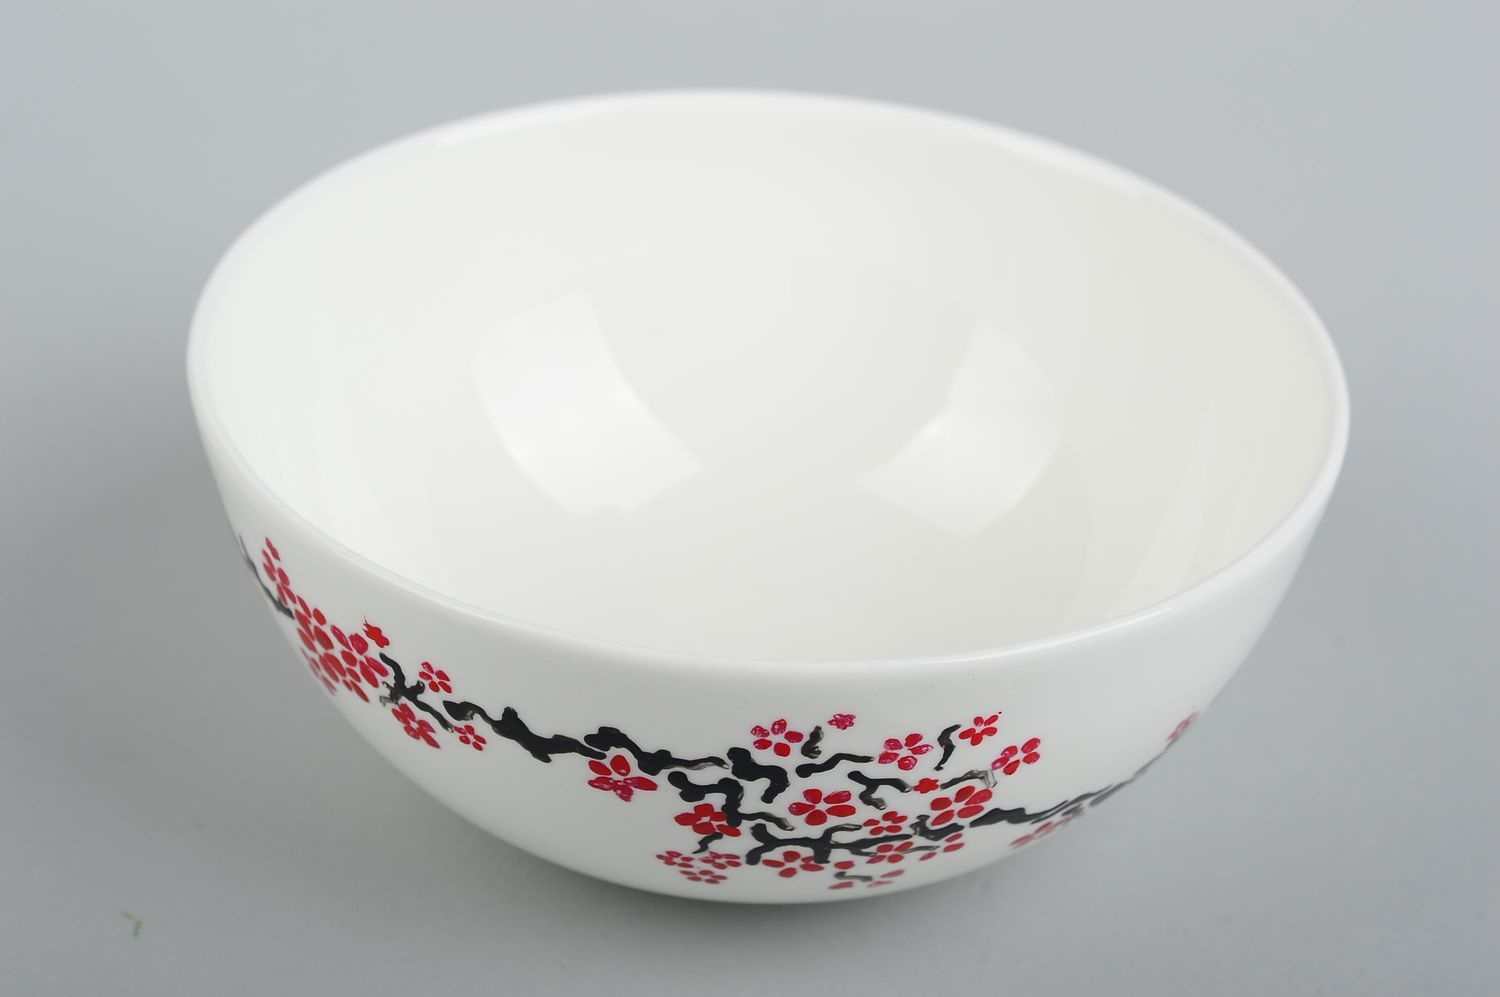 Глубокая керамическая тарелка ручной работы глиняная посуда тарелка для салата фото 4